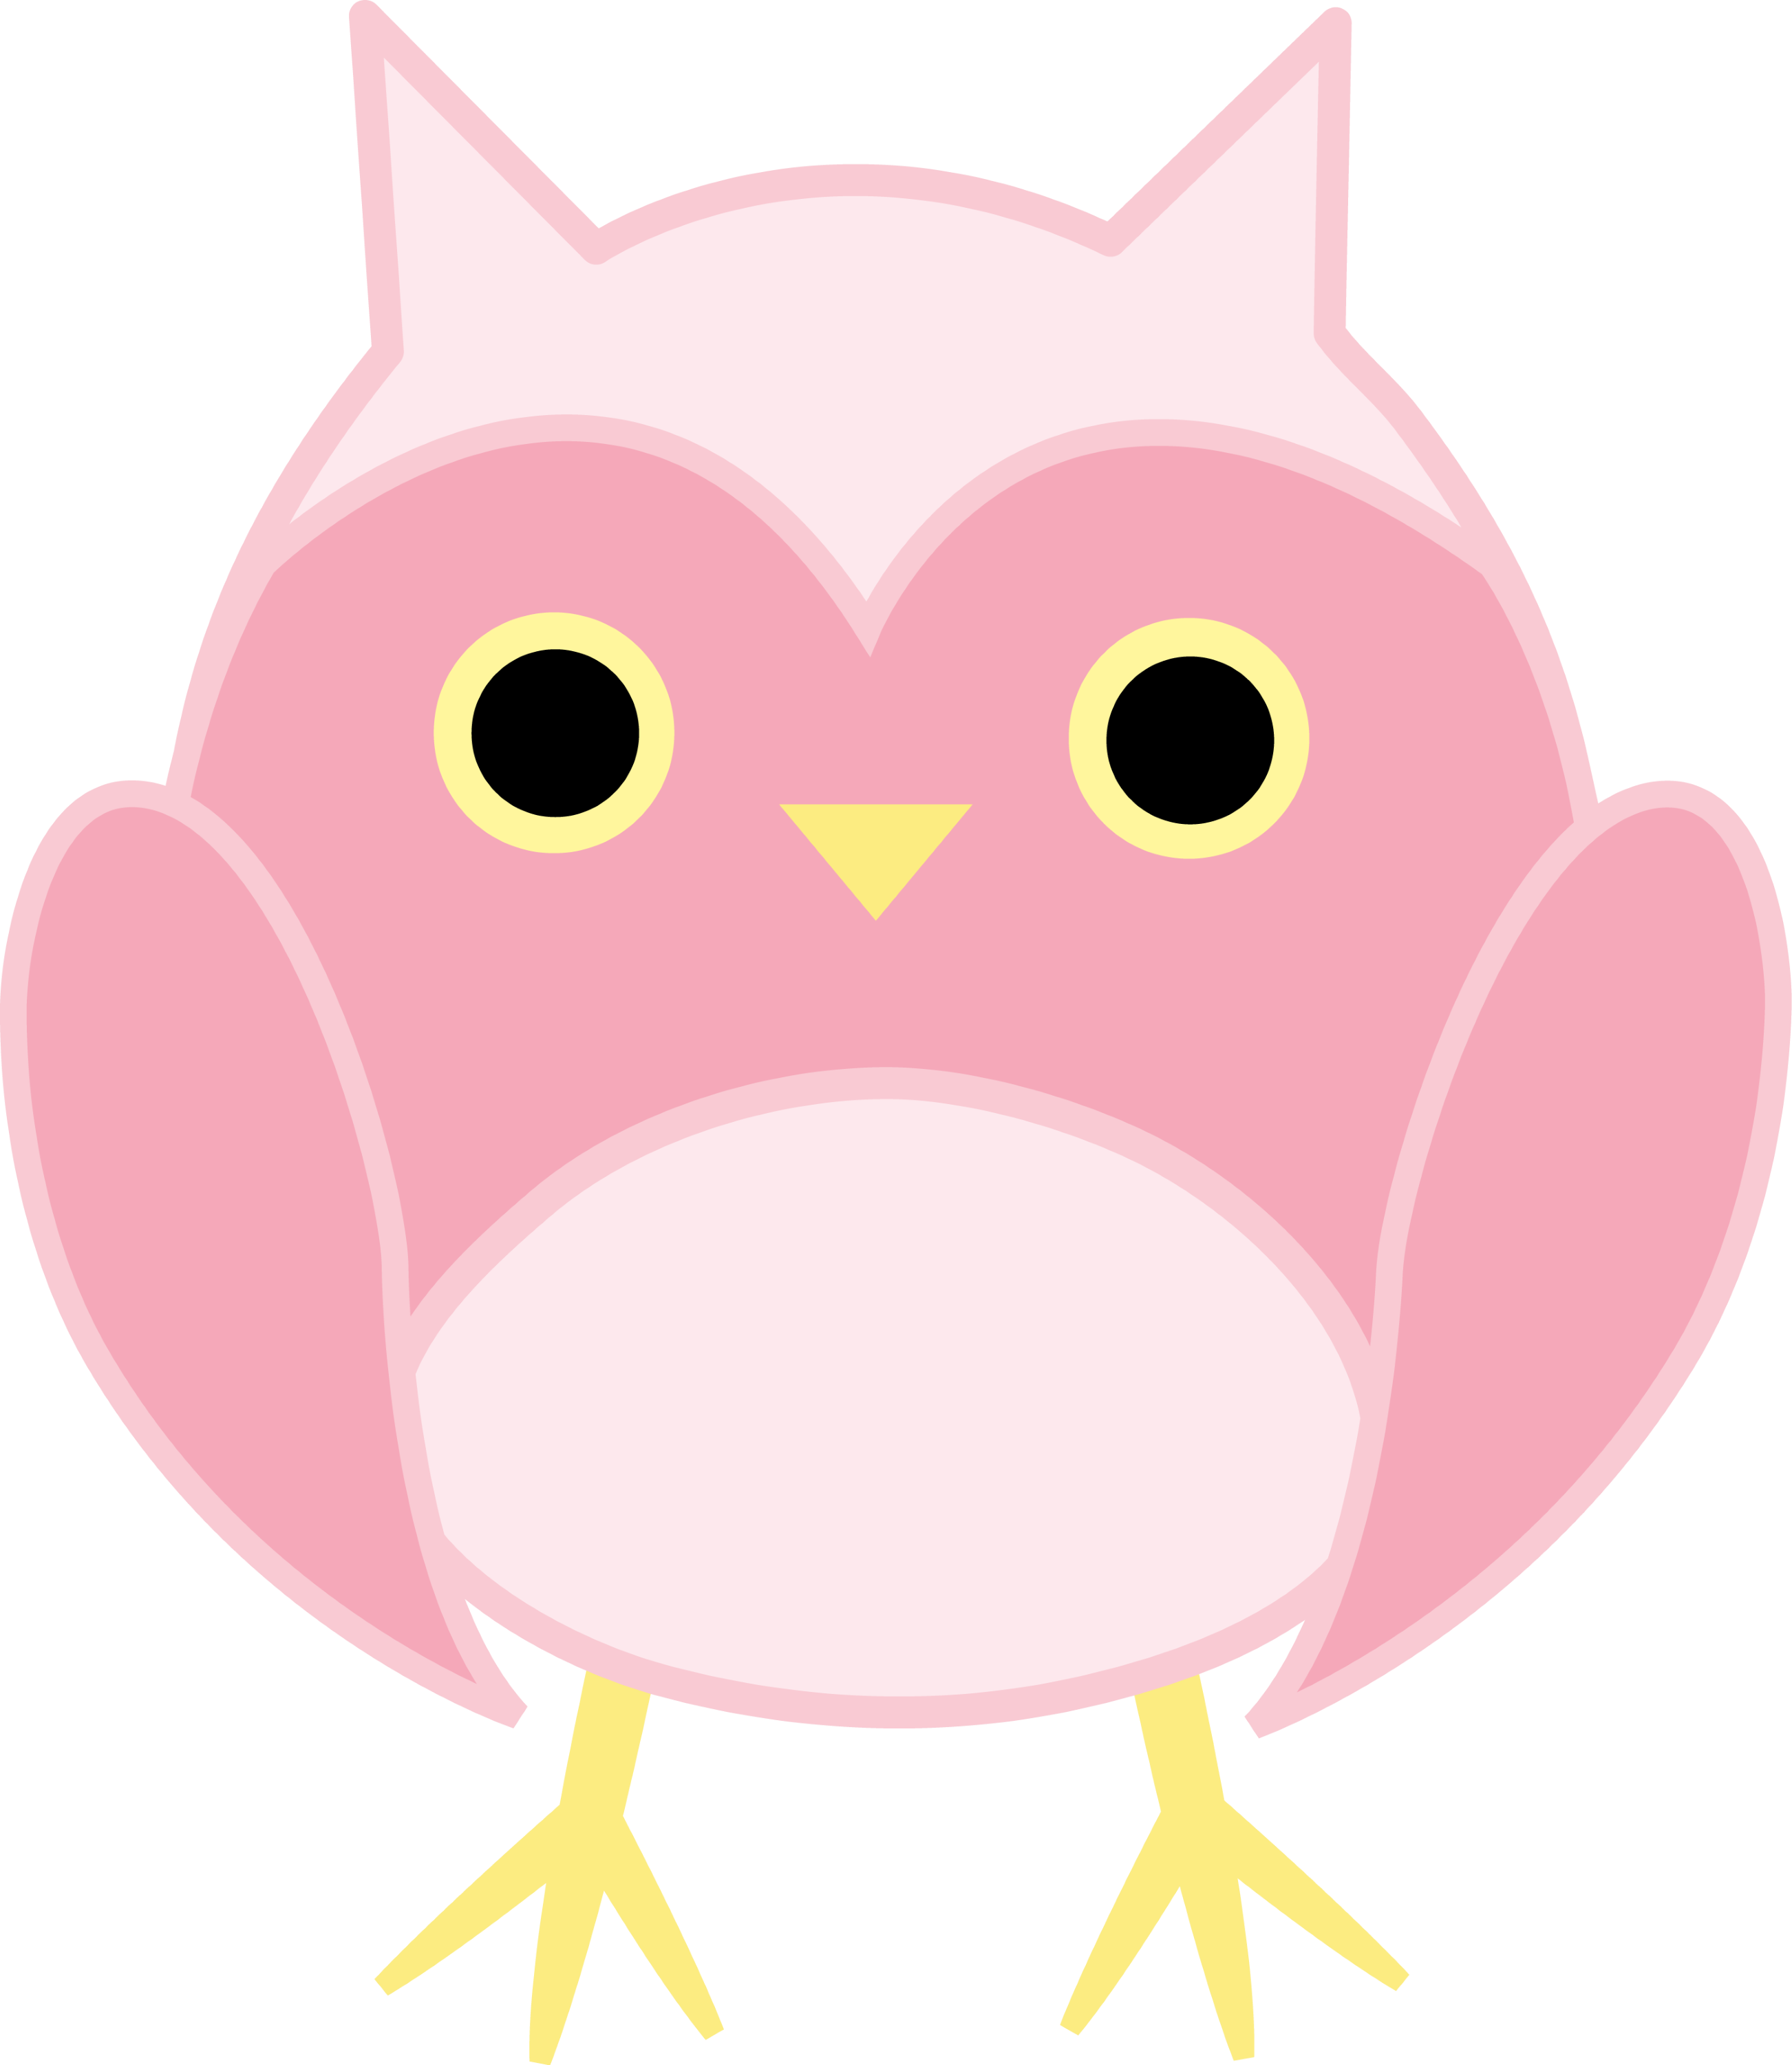 cute owls clip art - photo #45